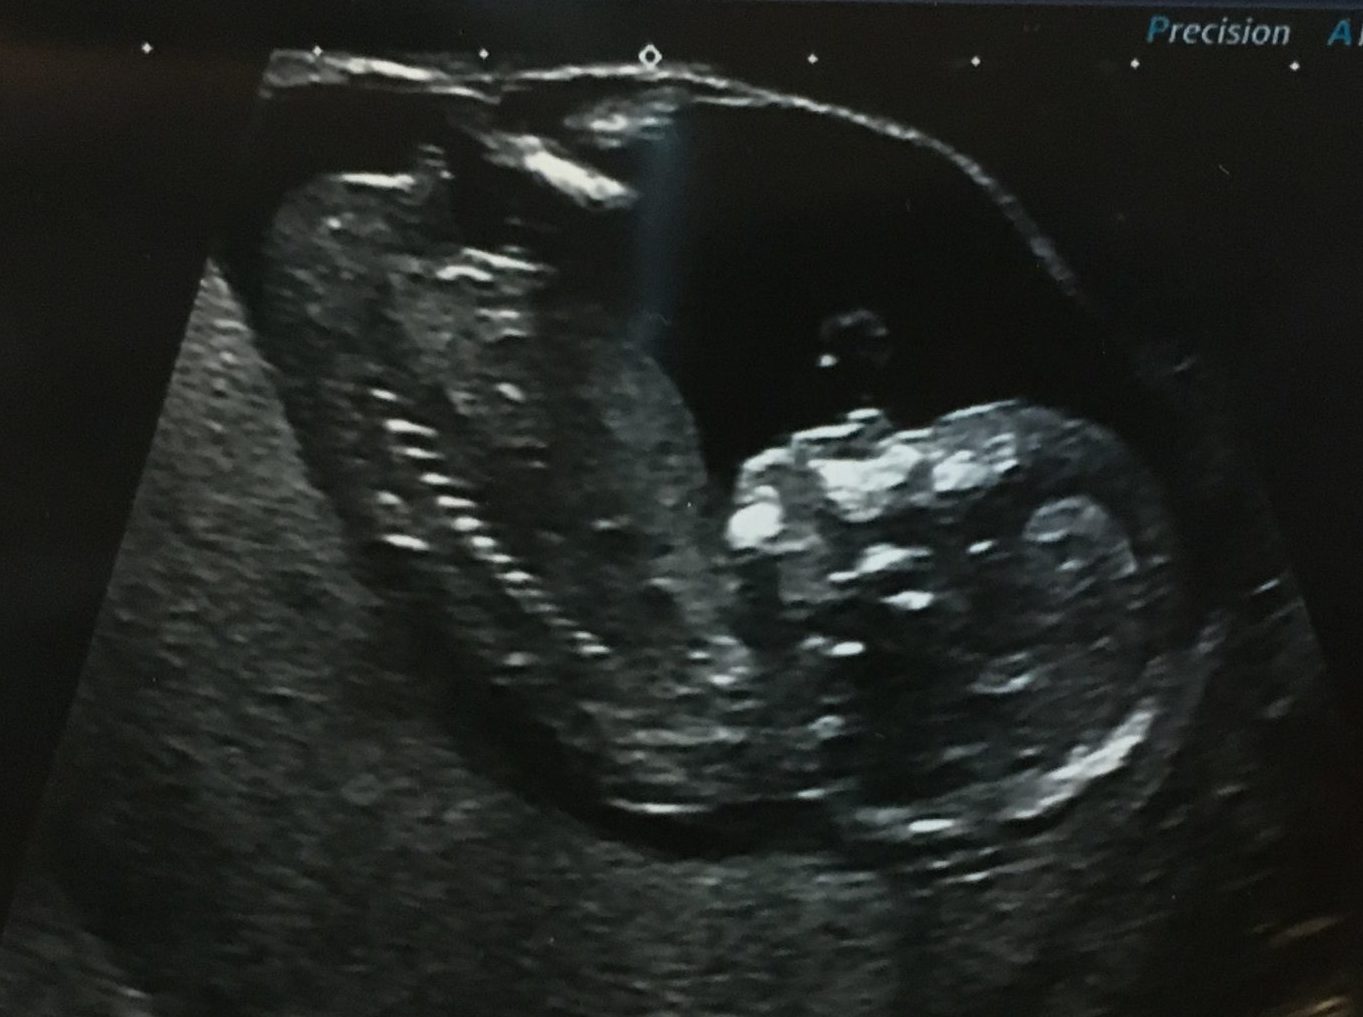 Sarah's fave ultrasound pic of Baby, taken at 13 weeks